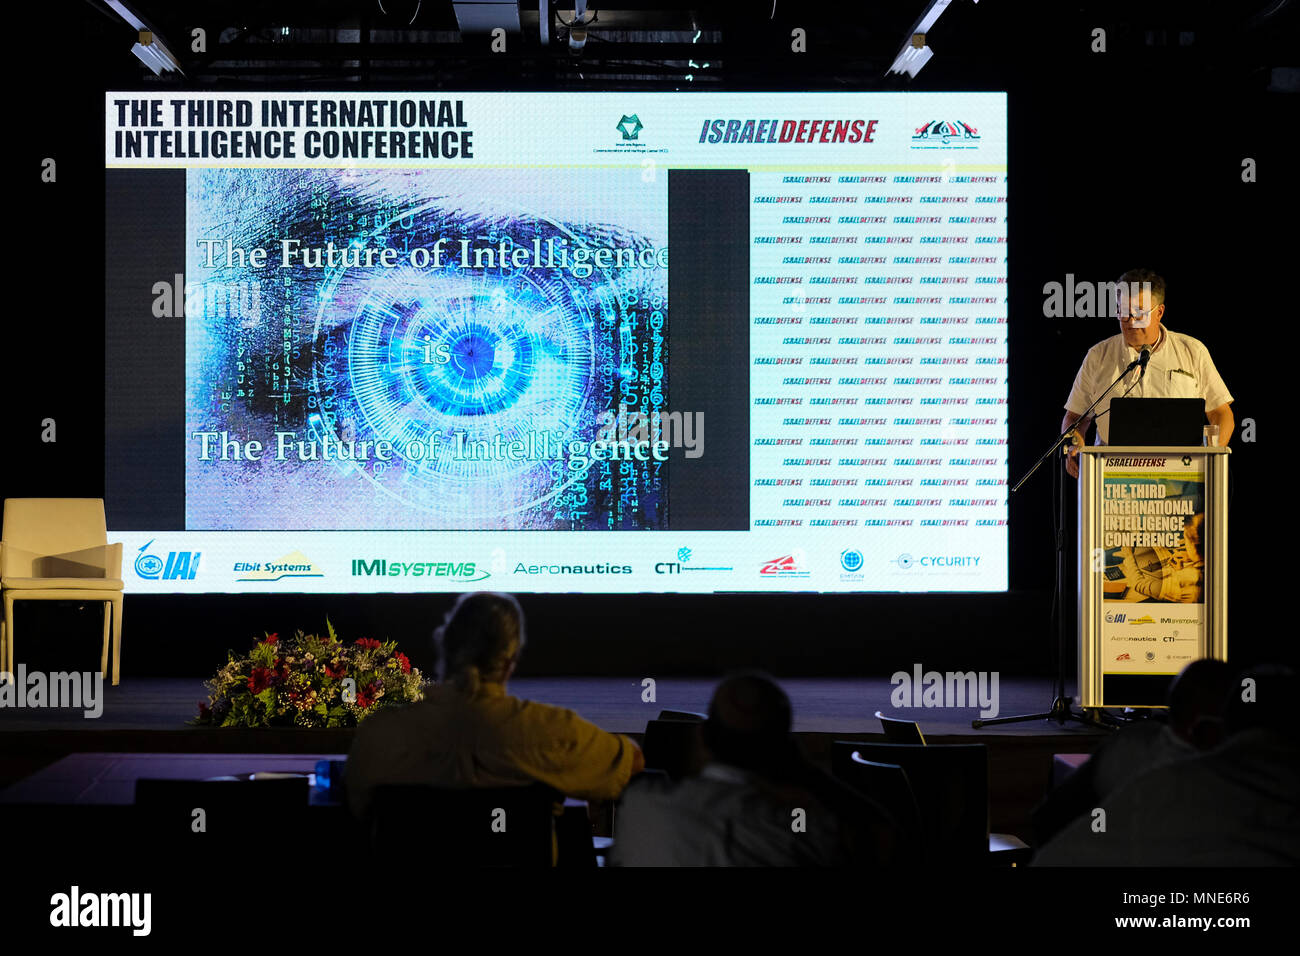 Chagai Tzuriel le Directeur général du Ministère israélien du renseignement s'adresse à des personnes sur l'avenir du renseignement lors de la troisième conférence internationale du renseignement qui se tient à tel Aviv en Israël Banque D'Images